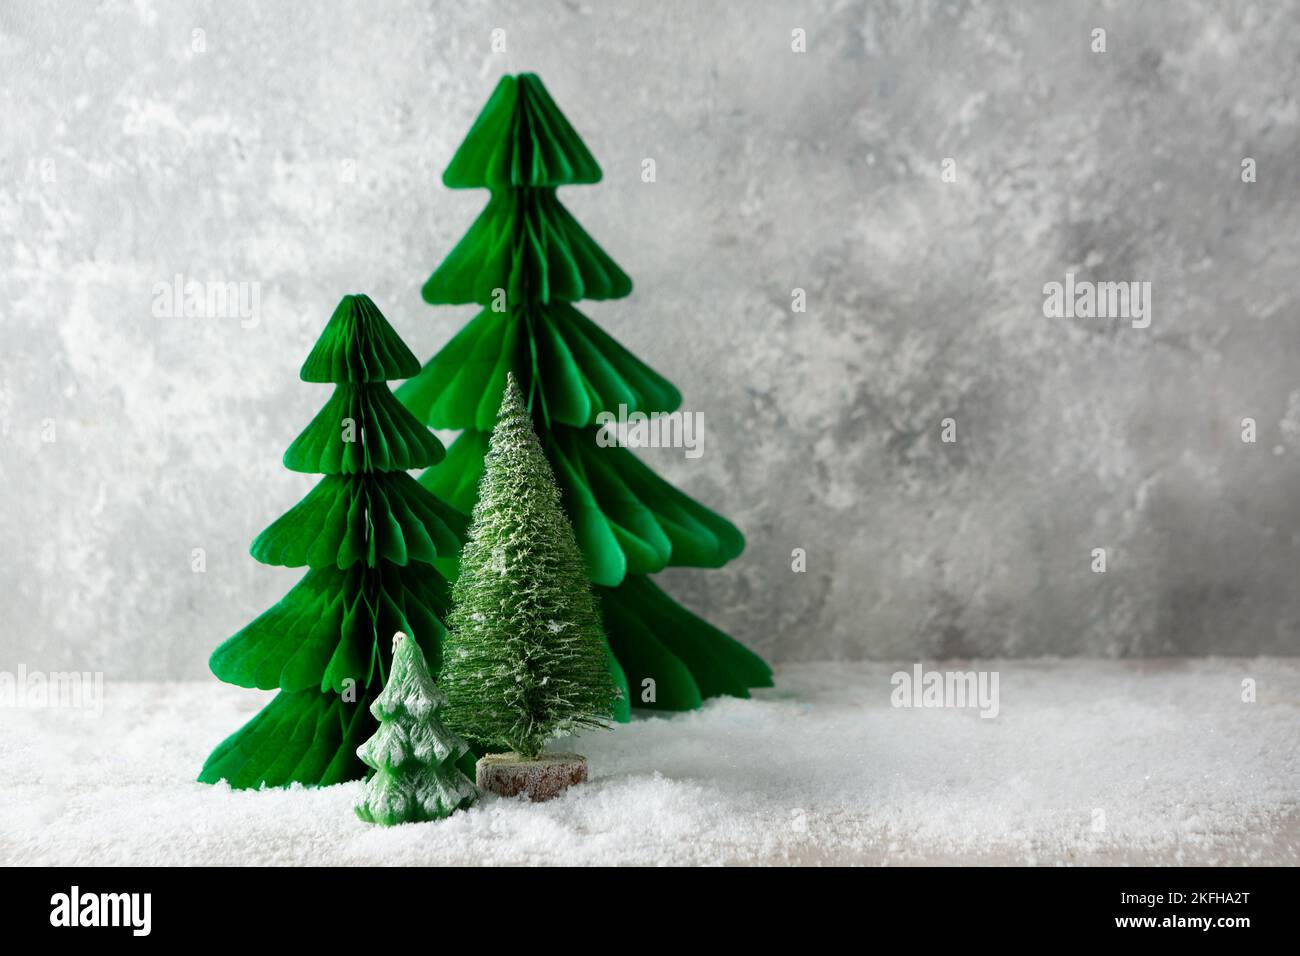 Weihnachten Hintergrund Kopie Raum mit grünen Baum Papier Handwerk Kerze Urlaub Konzept Stockfoto